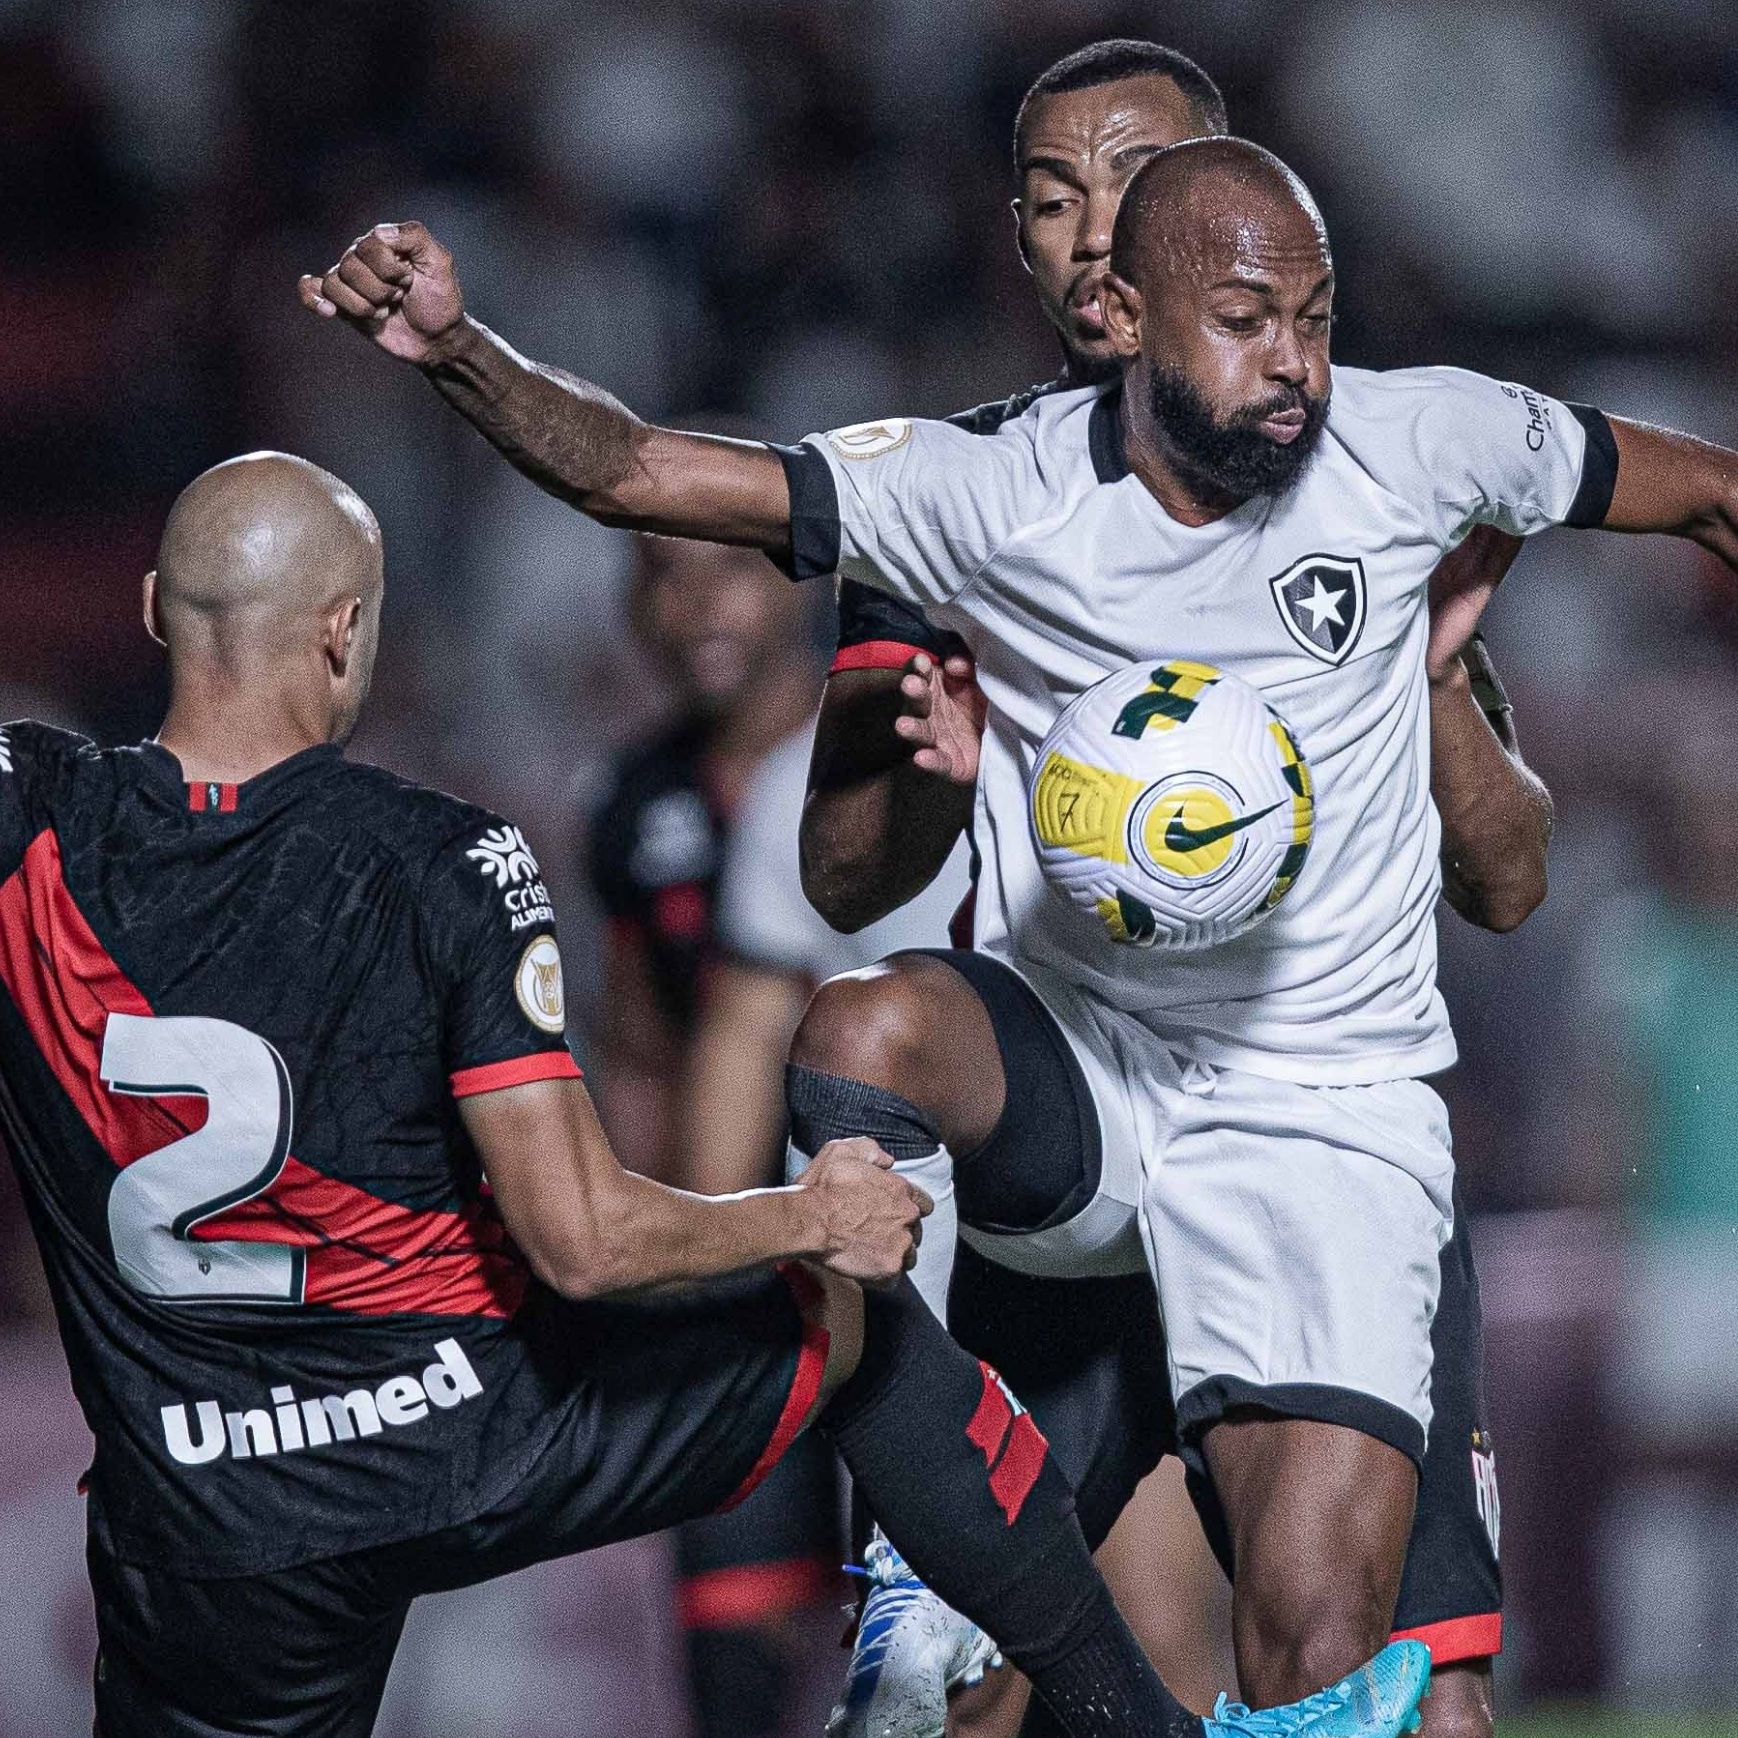 CBF altera horários de jogos do Corinthians, Botafogo e América-MG